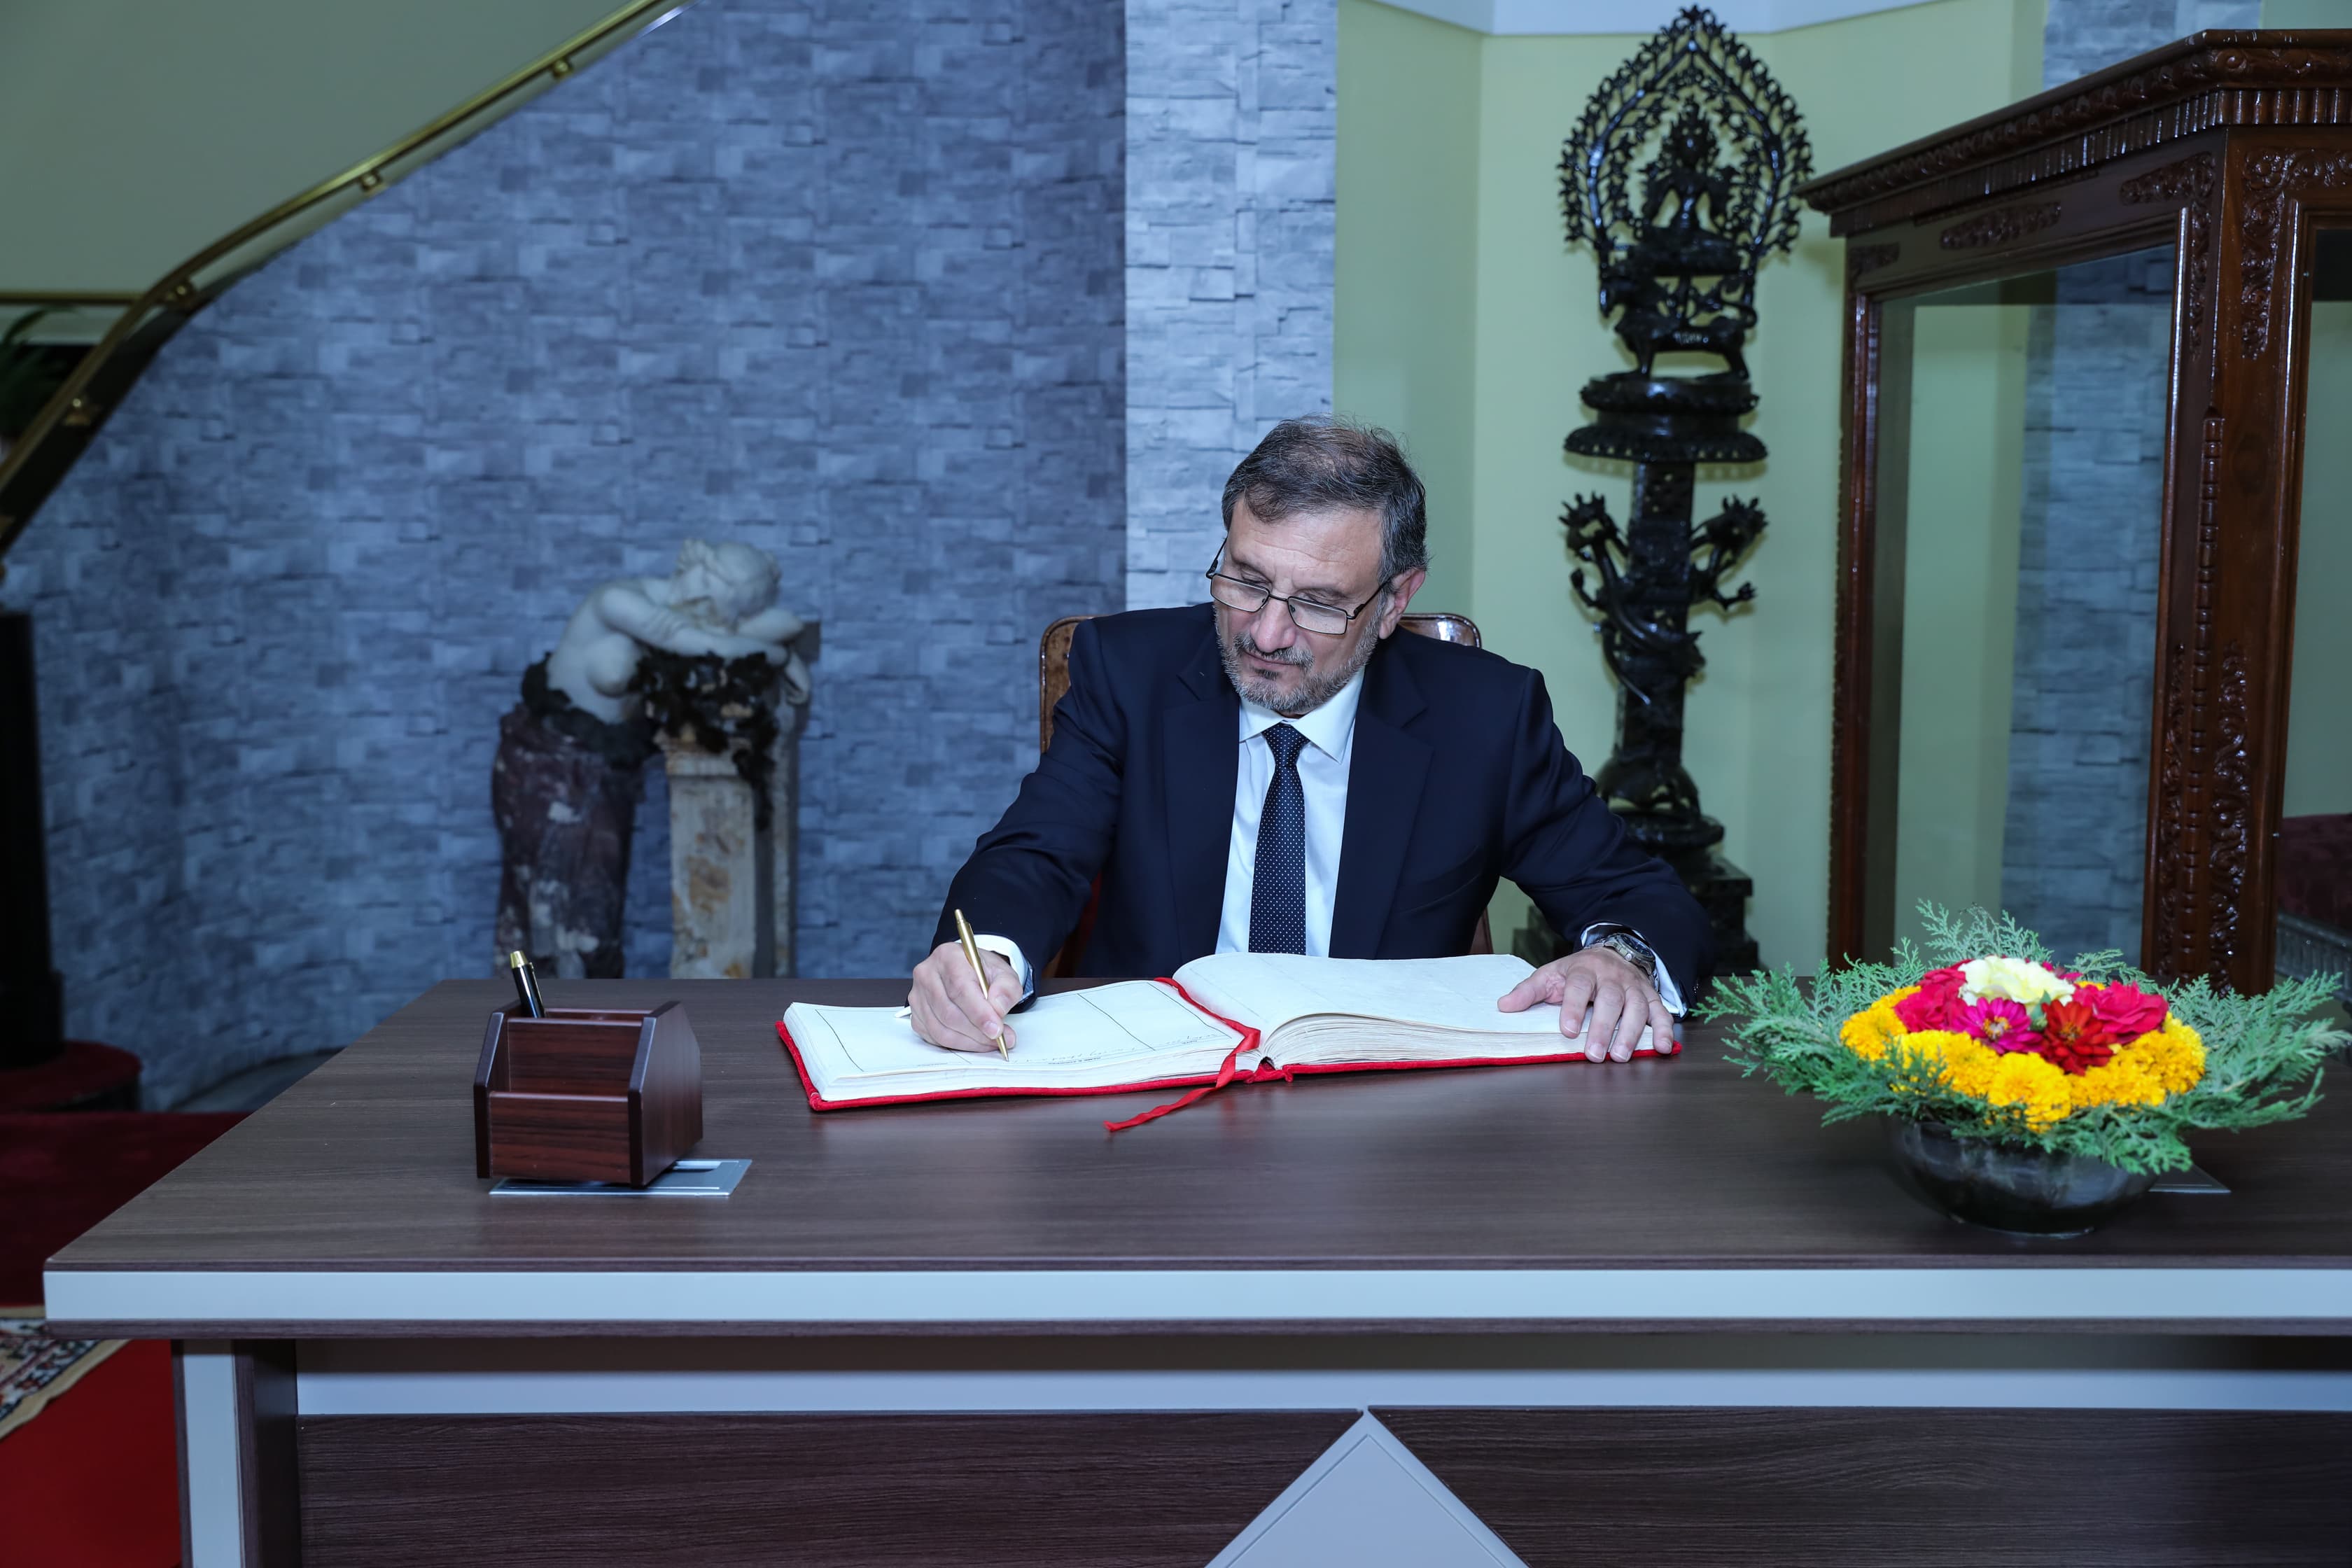 Връчване на акредитивни писма на г-н Николай Янков, извънреден и пълномощен посланик на Република България в Непал.